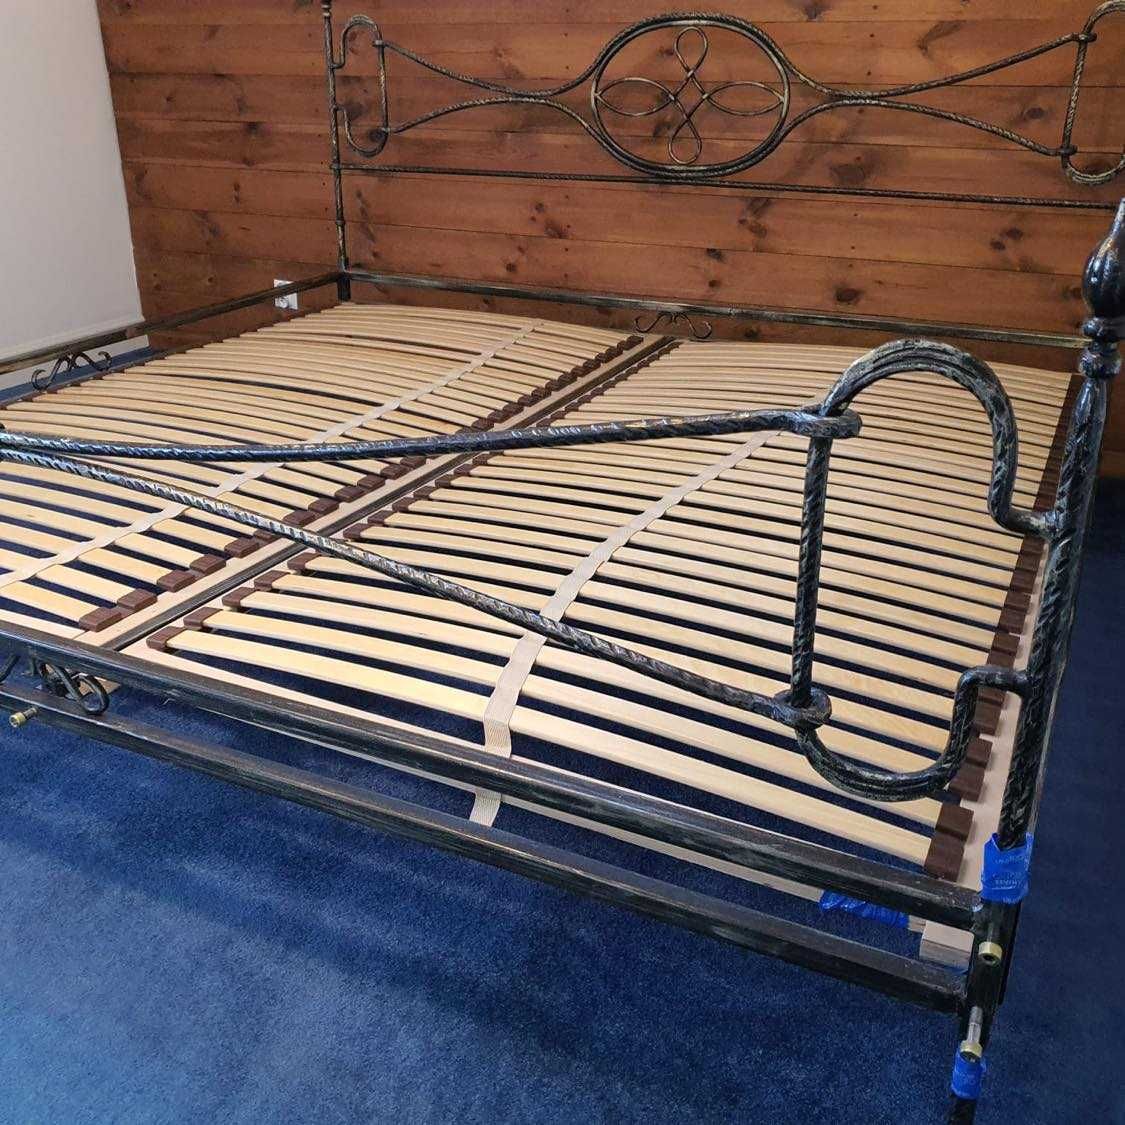 Sprzedam stylowe, efektowne łóżko metalowe - duże plus stoliki nocne